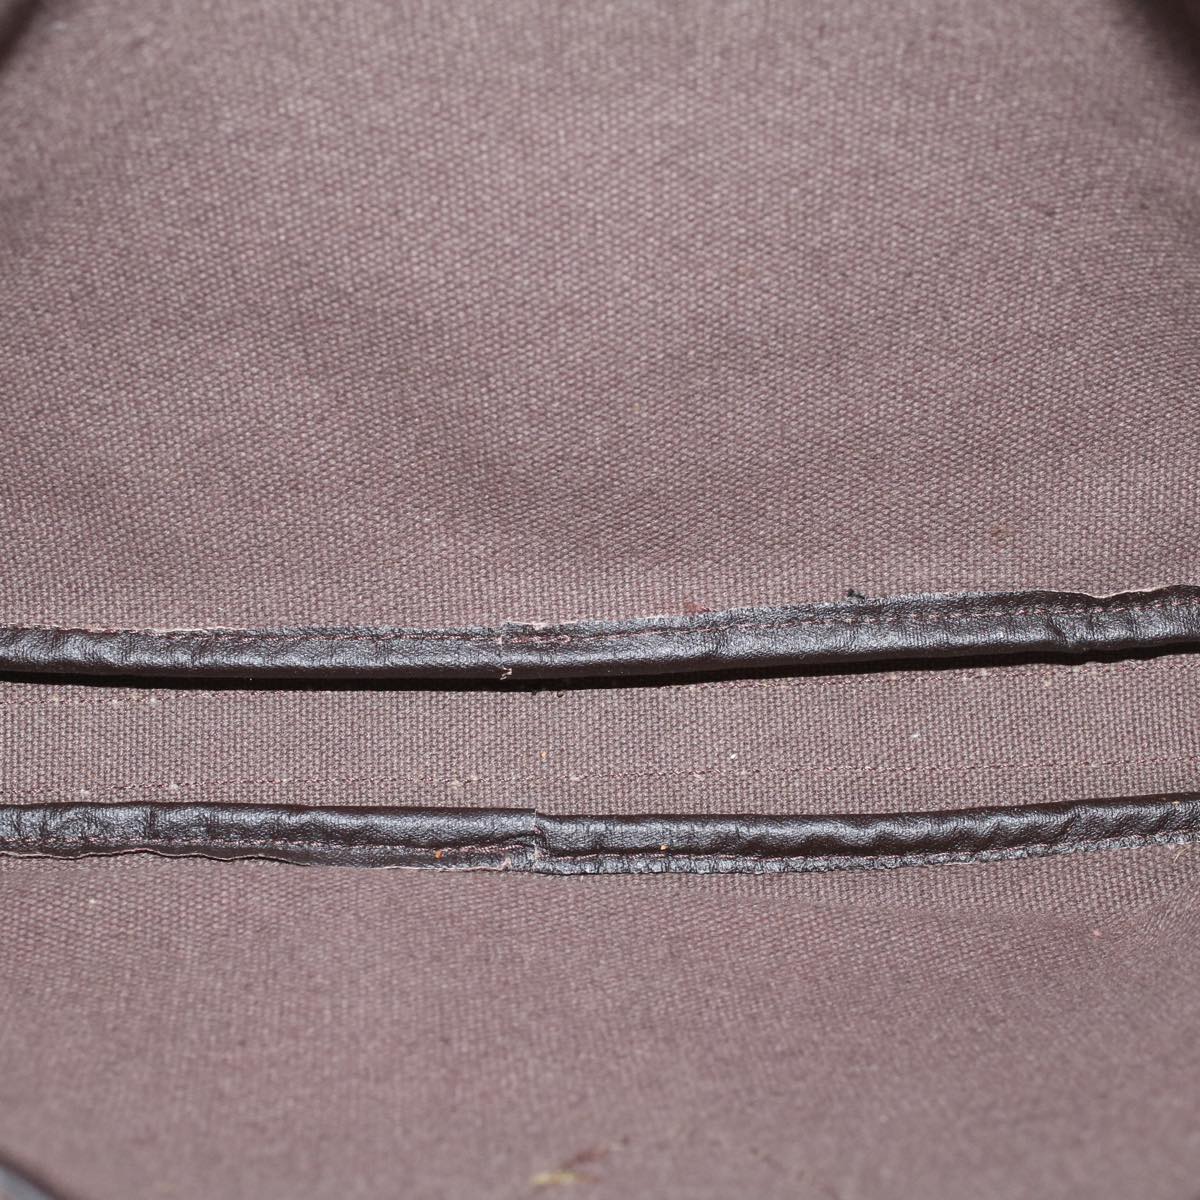 SAINT LAURENT Clutch Bag PVC Leather Gray Auth bs9362